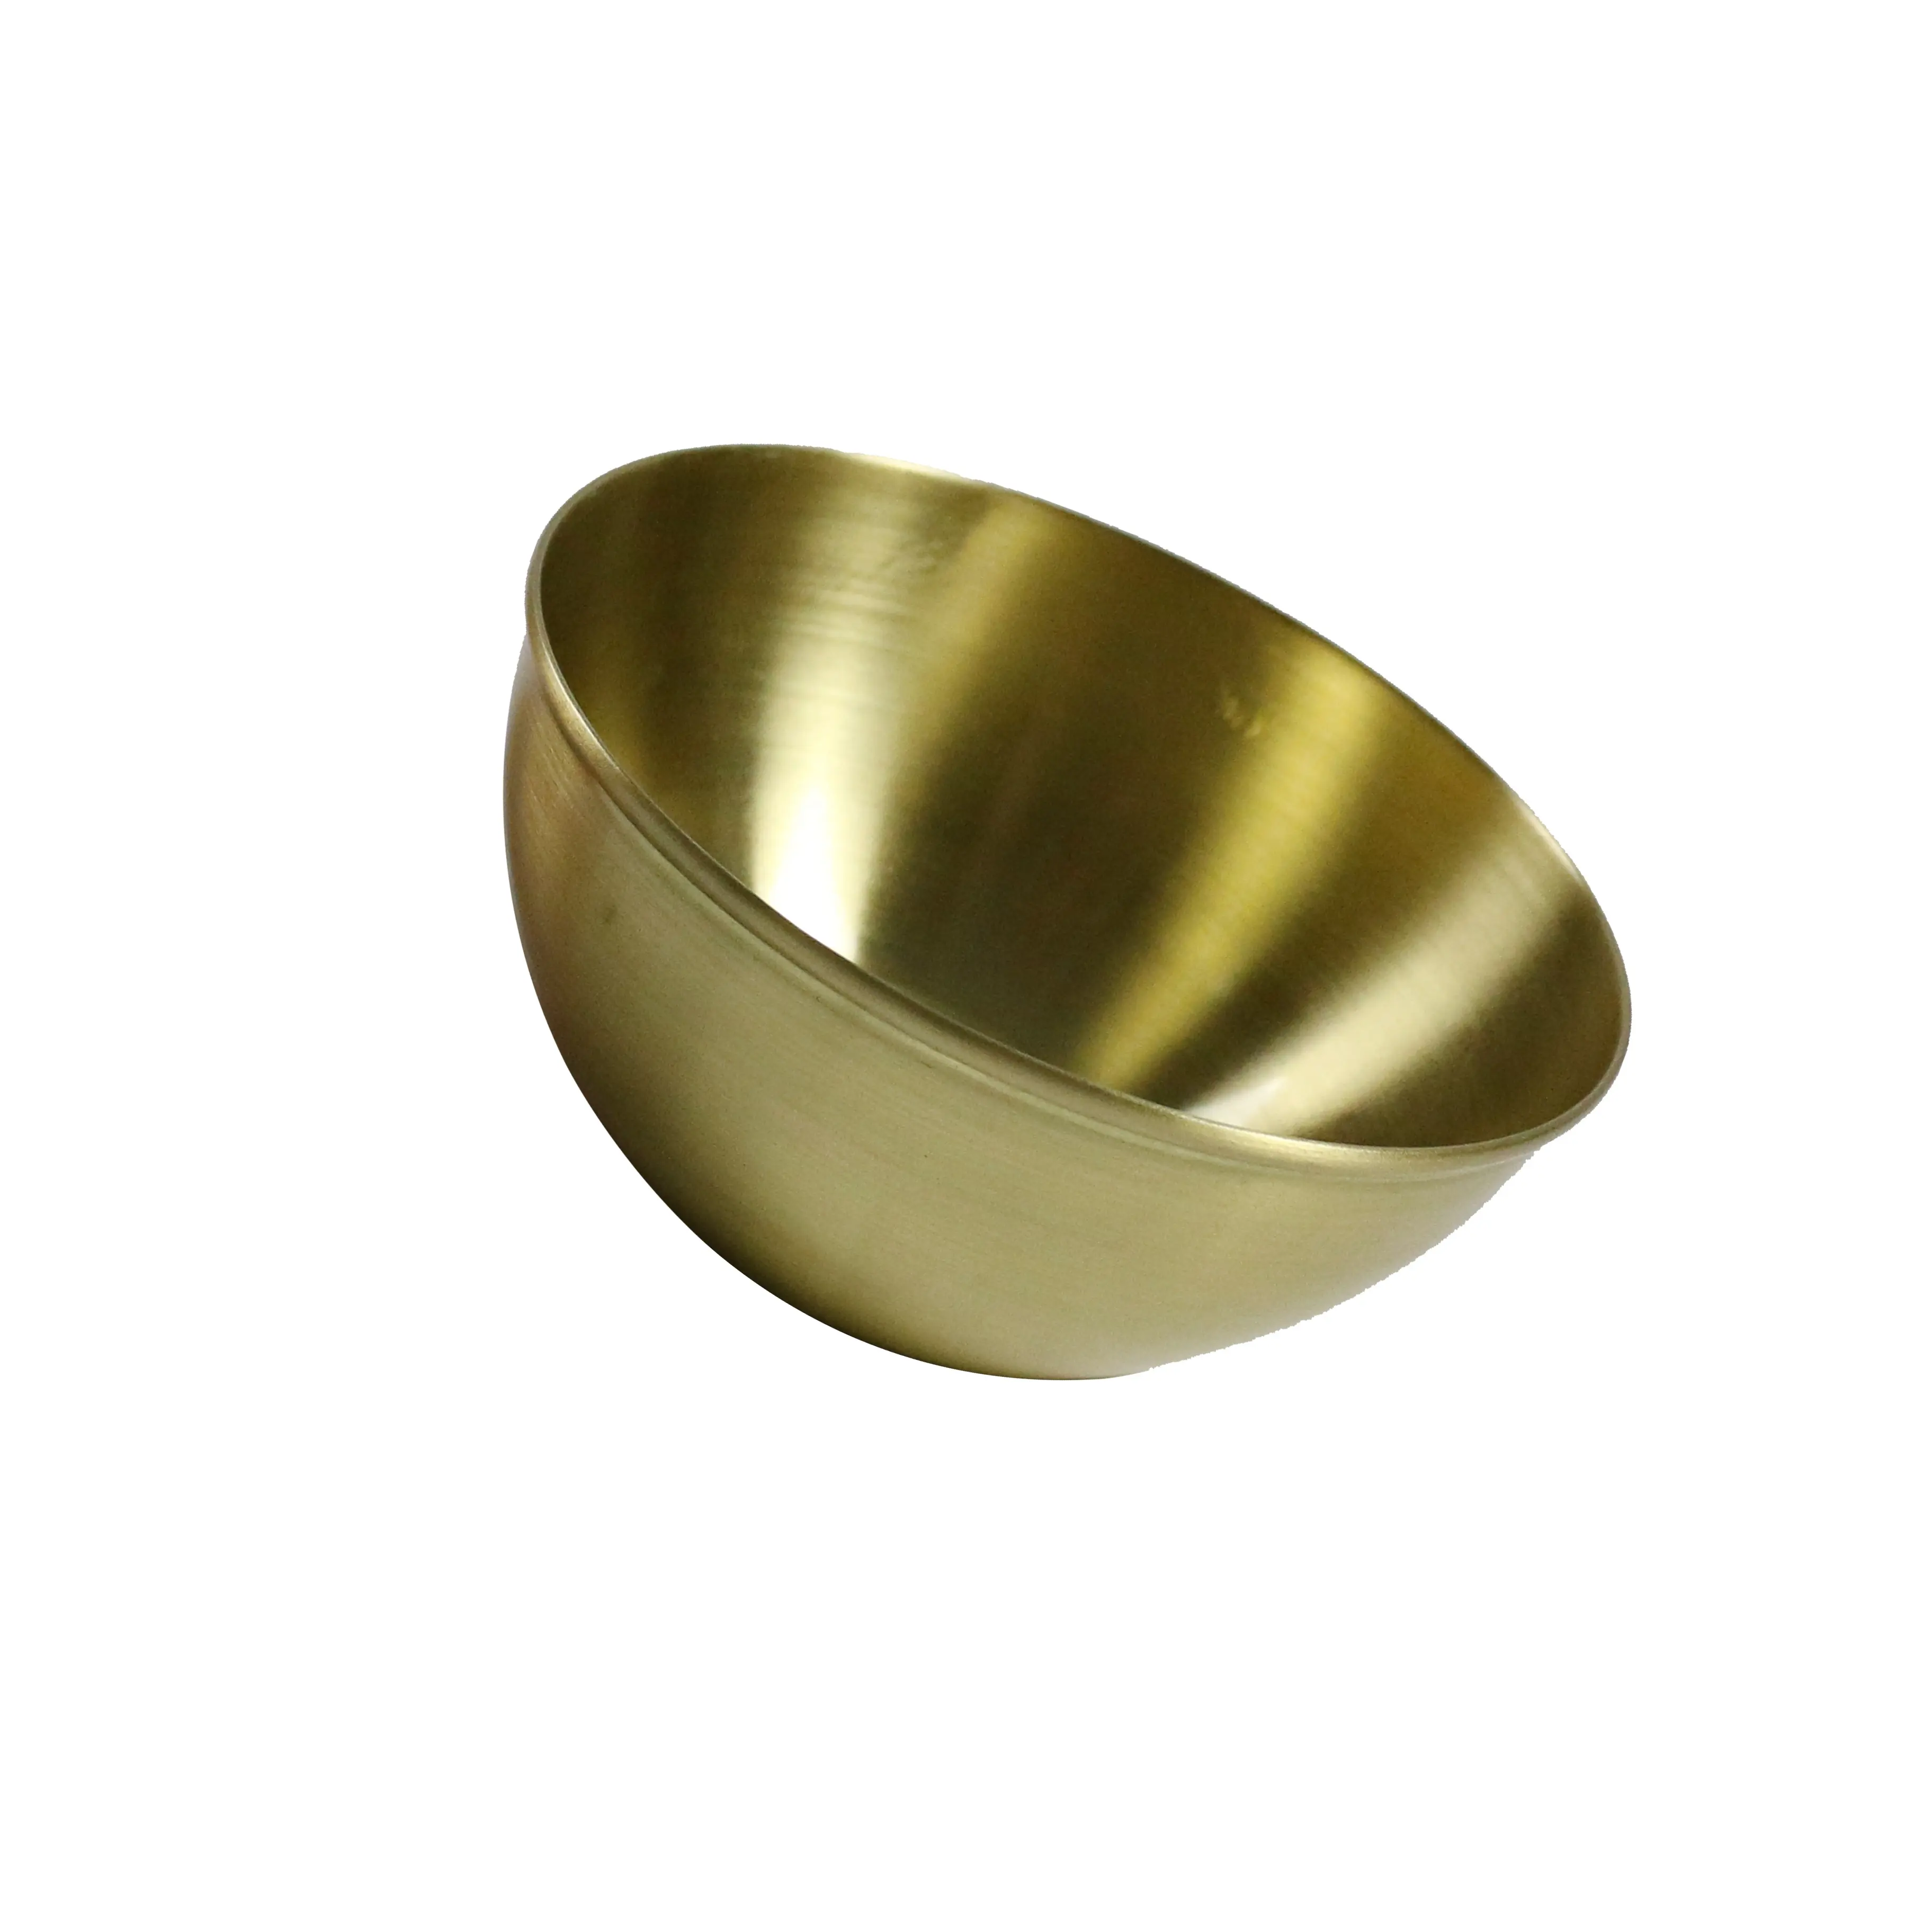 Sheet Metal Fabrication Metal Spinning Copper Serving Bowl